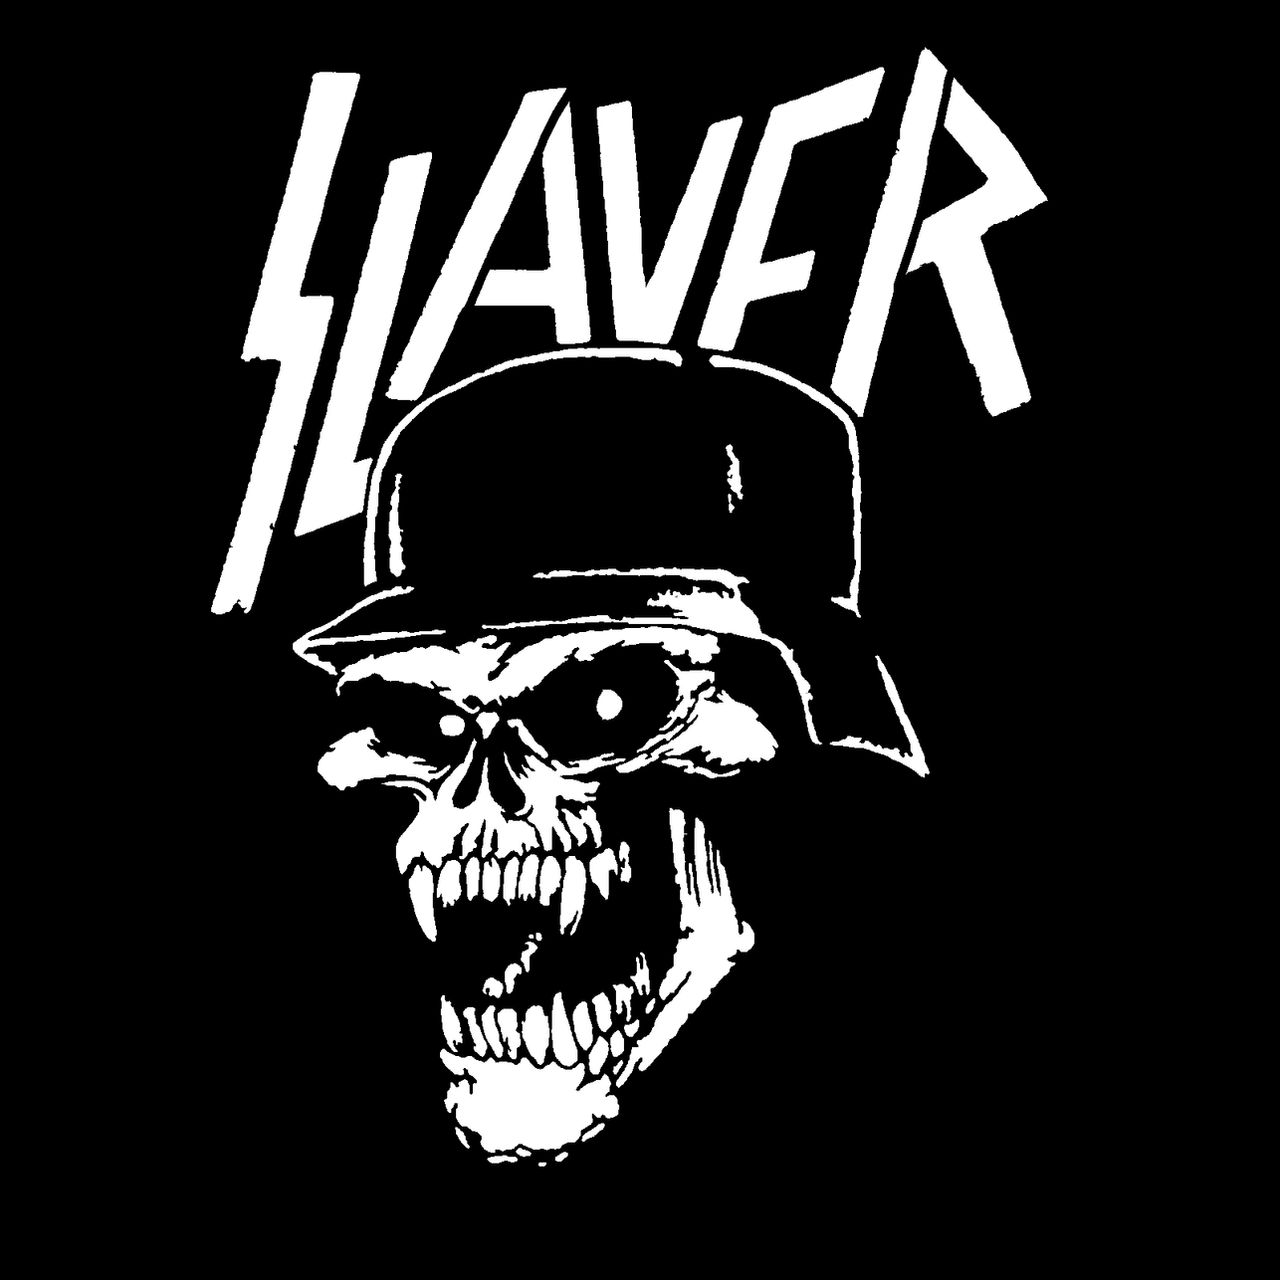 Slayer - Skull by AnarchoStencilism on DeviantArt